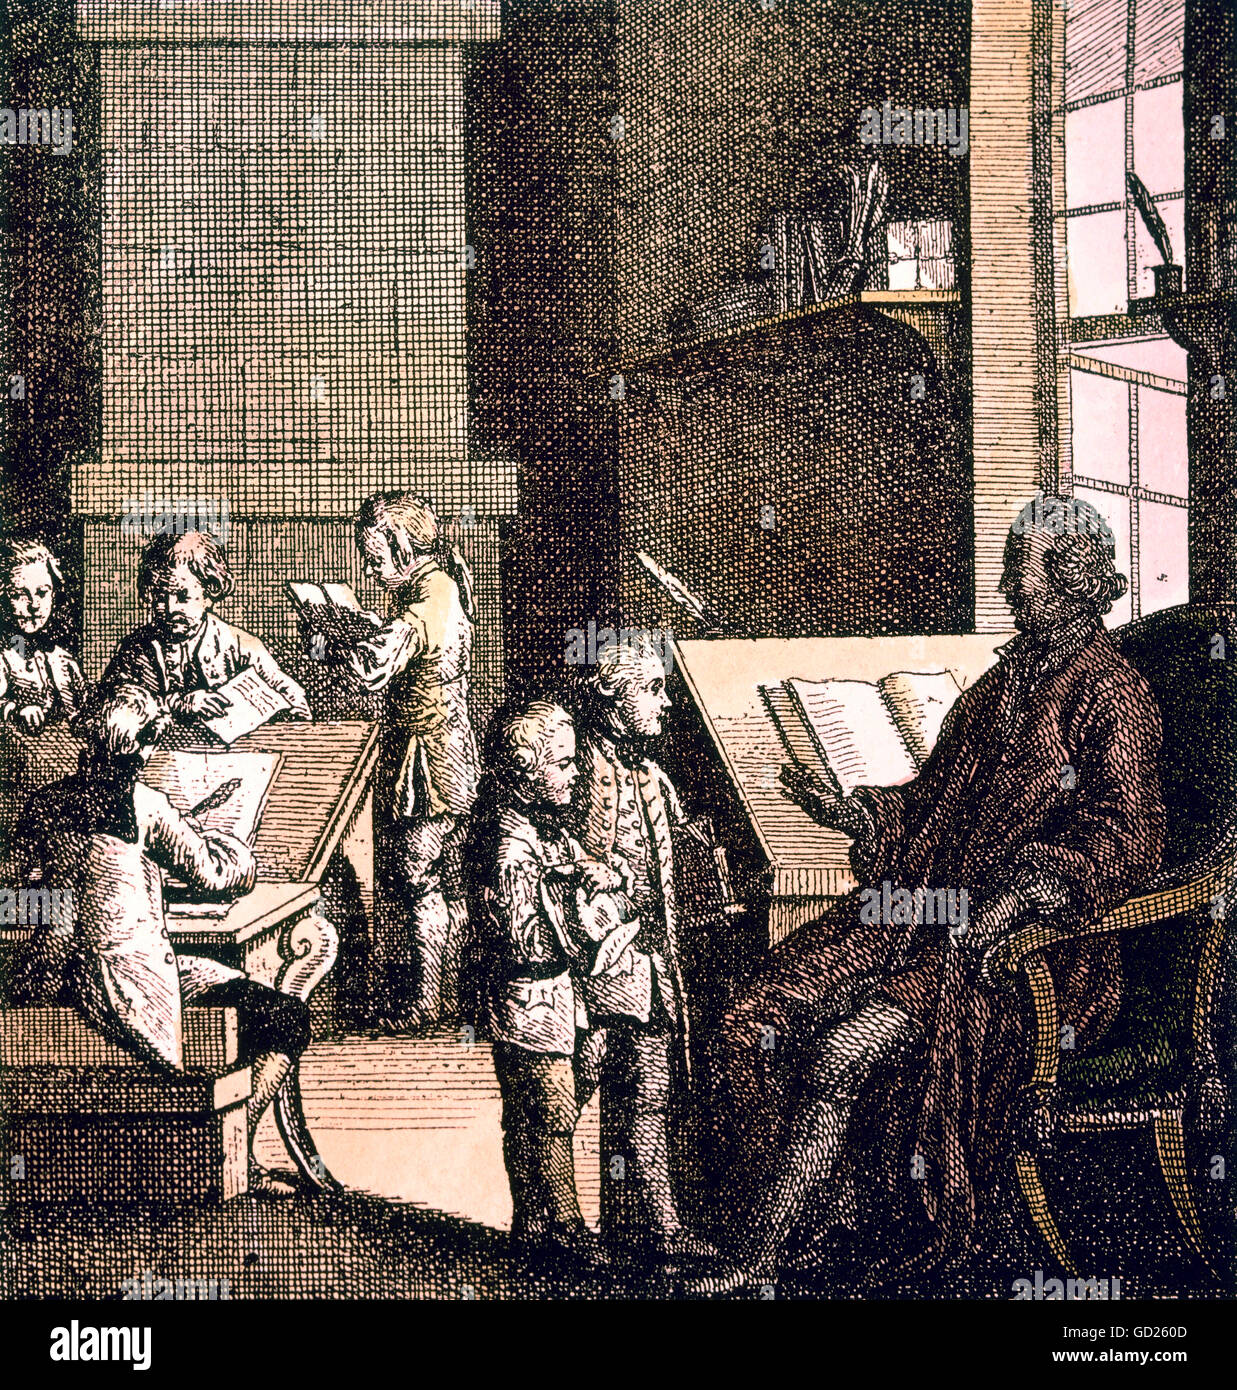 La educación, la experiencia, el profesor en un escritorio, grabado en cobre por J. R. Schellenberg, coloreado, 1771, Copyright del artista no ha de ser borrado Foto de stock